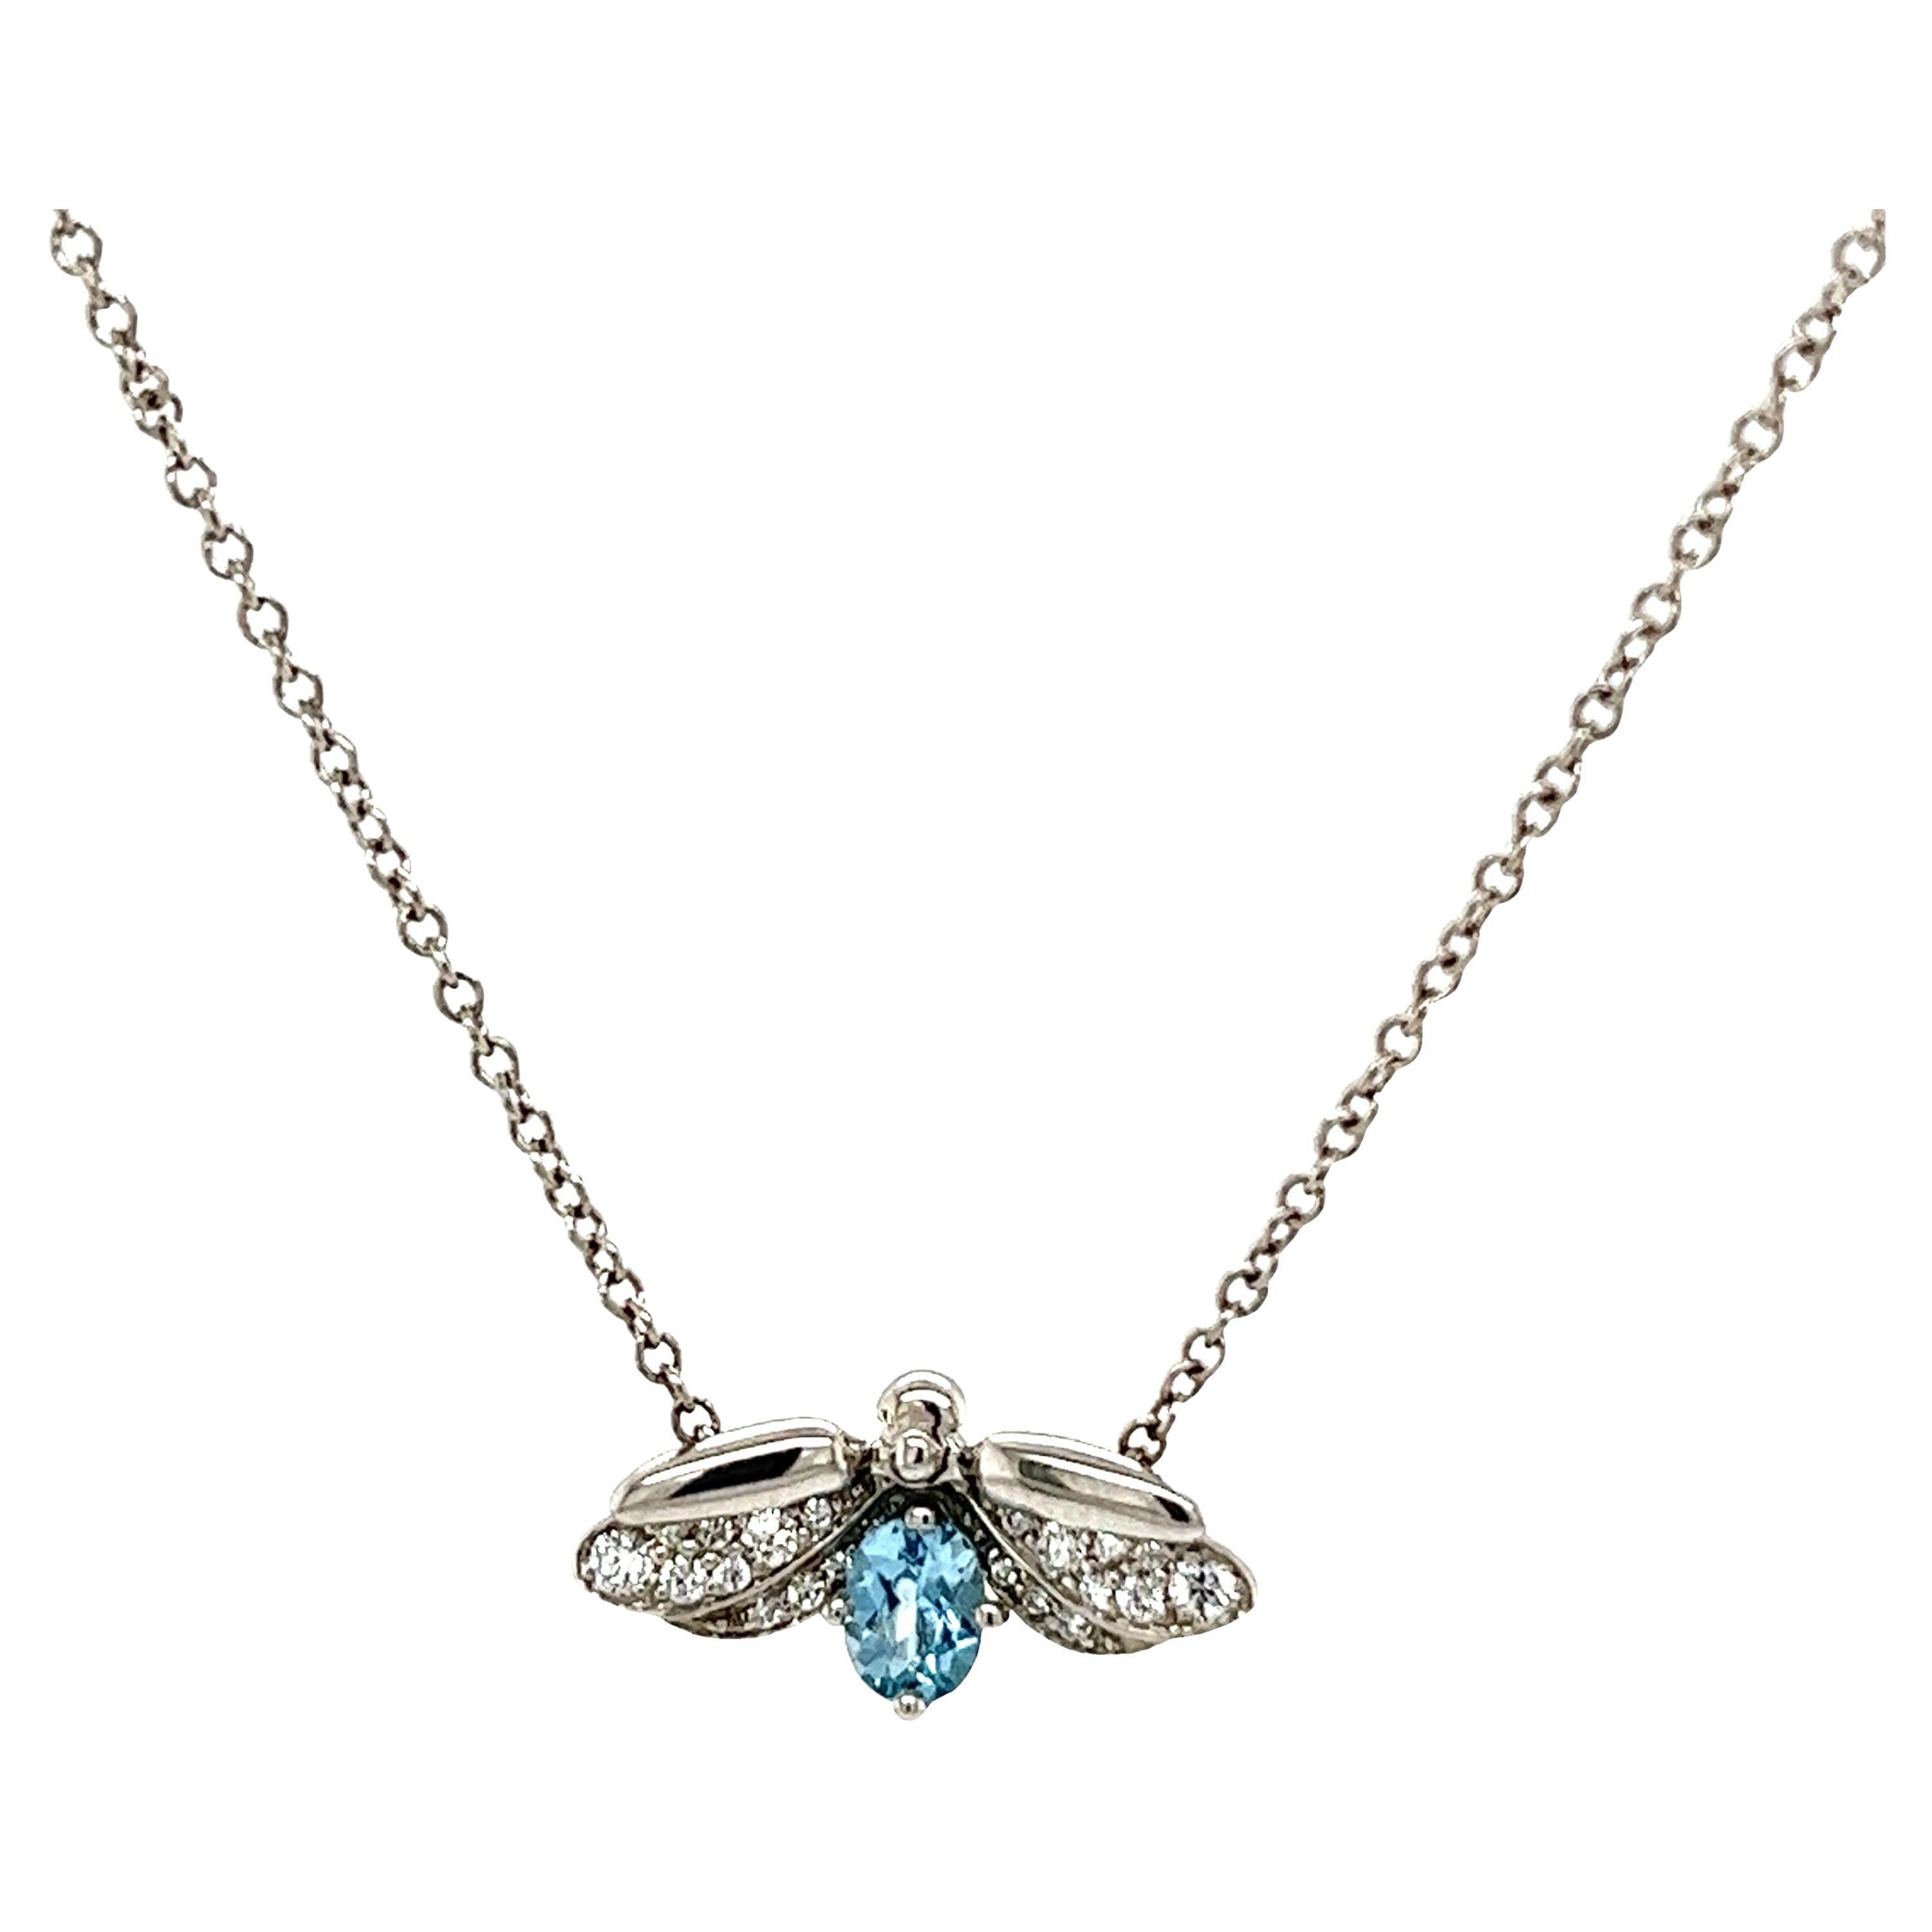 Tiffany & Co Aquamarine Firefly Pendant Necklace